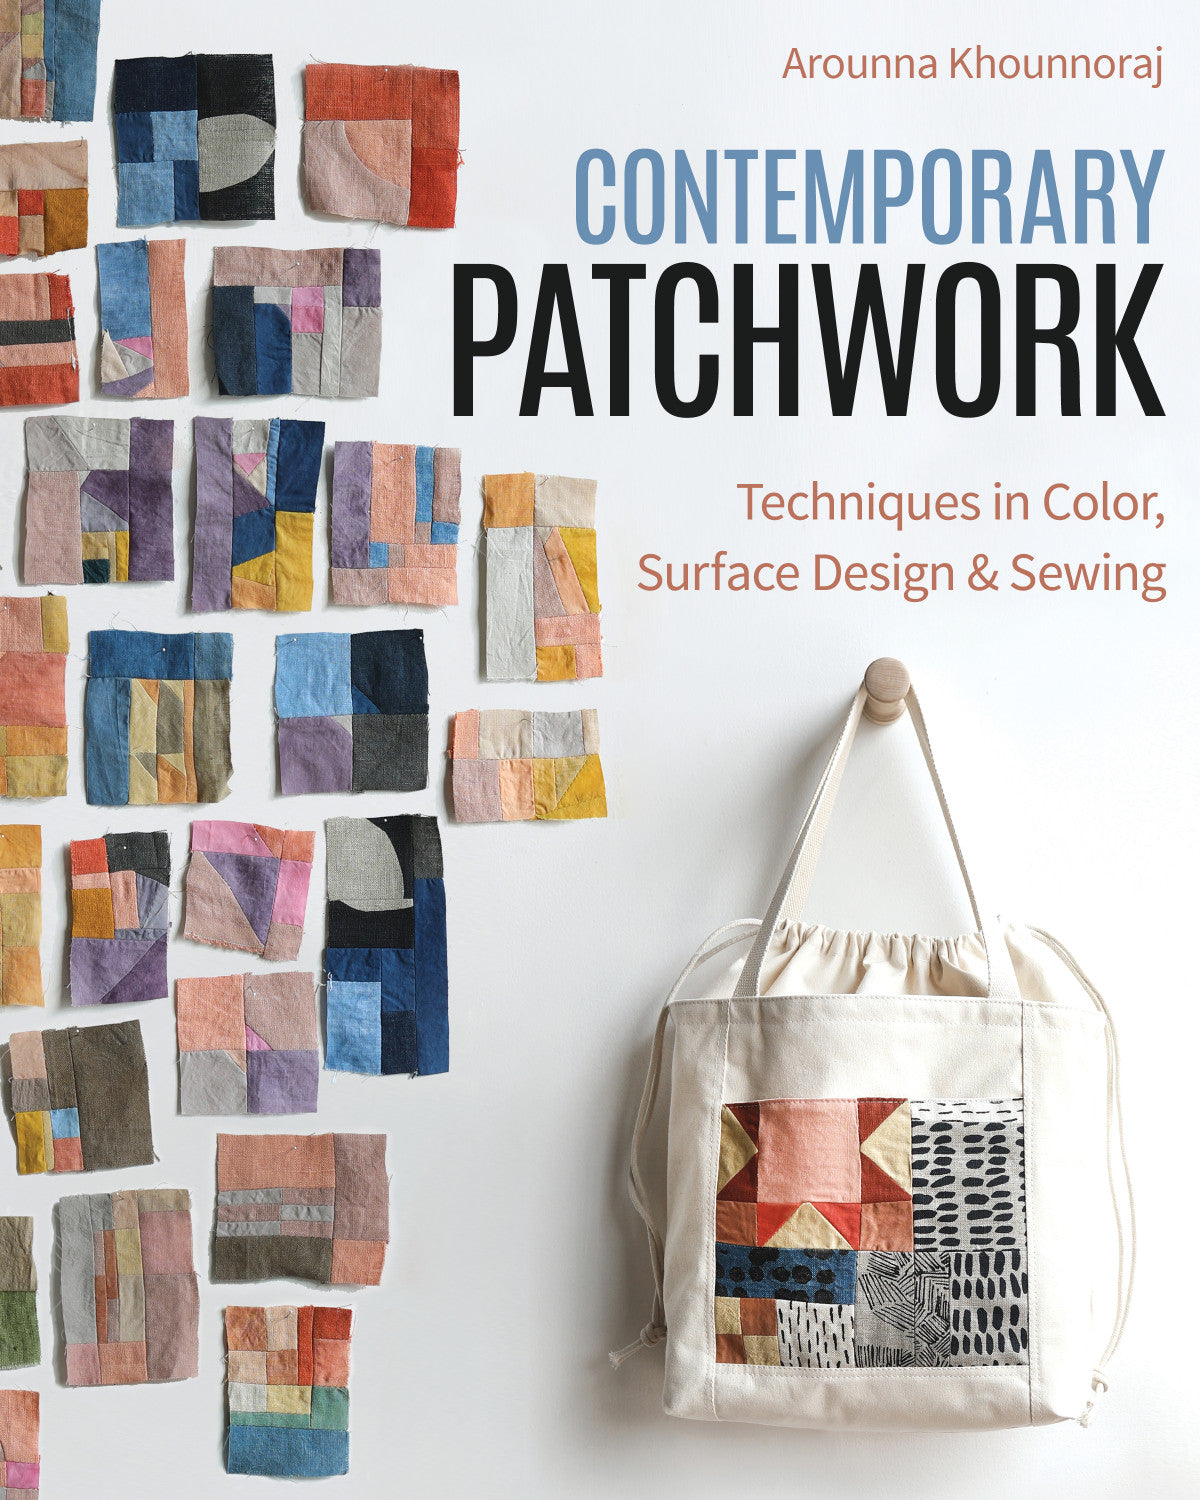 Contemporary Patchwork -11548 - Stash Books